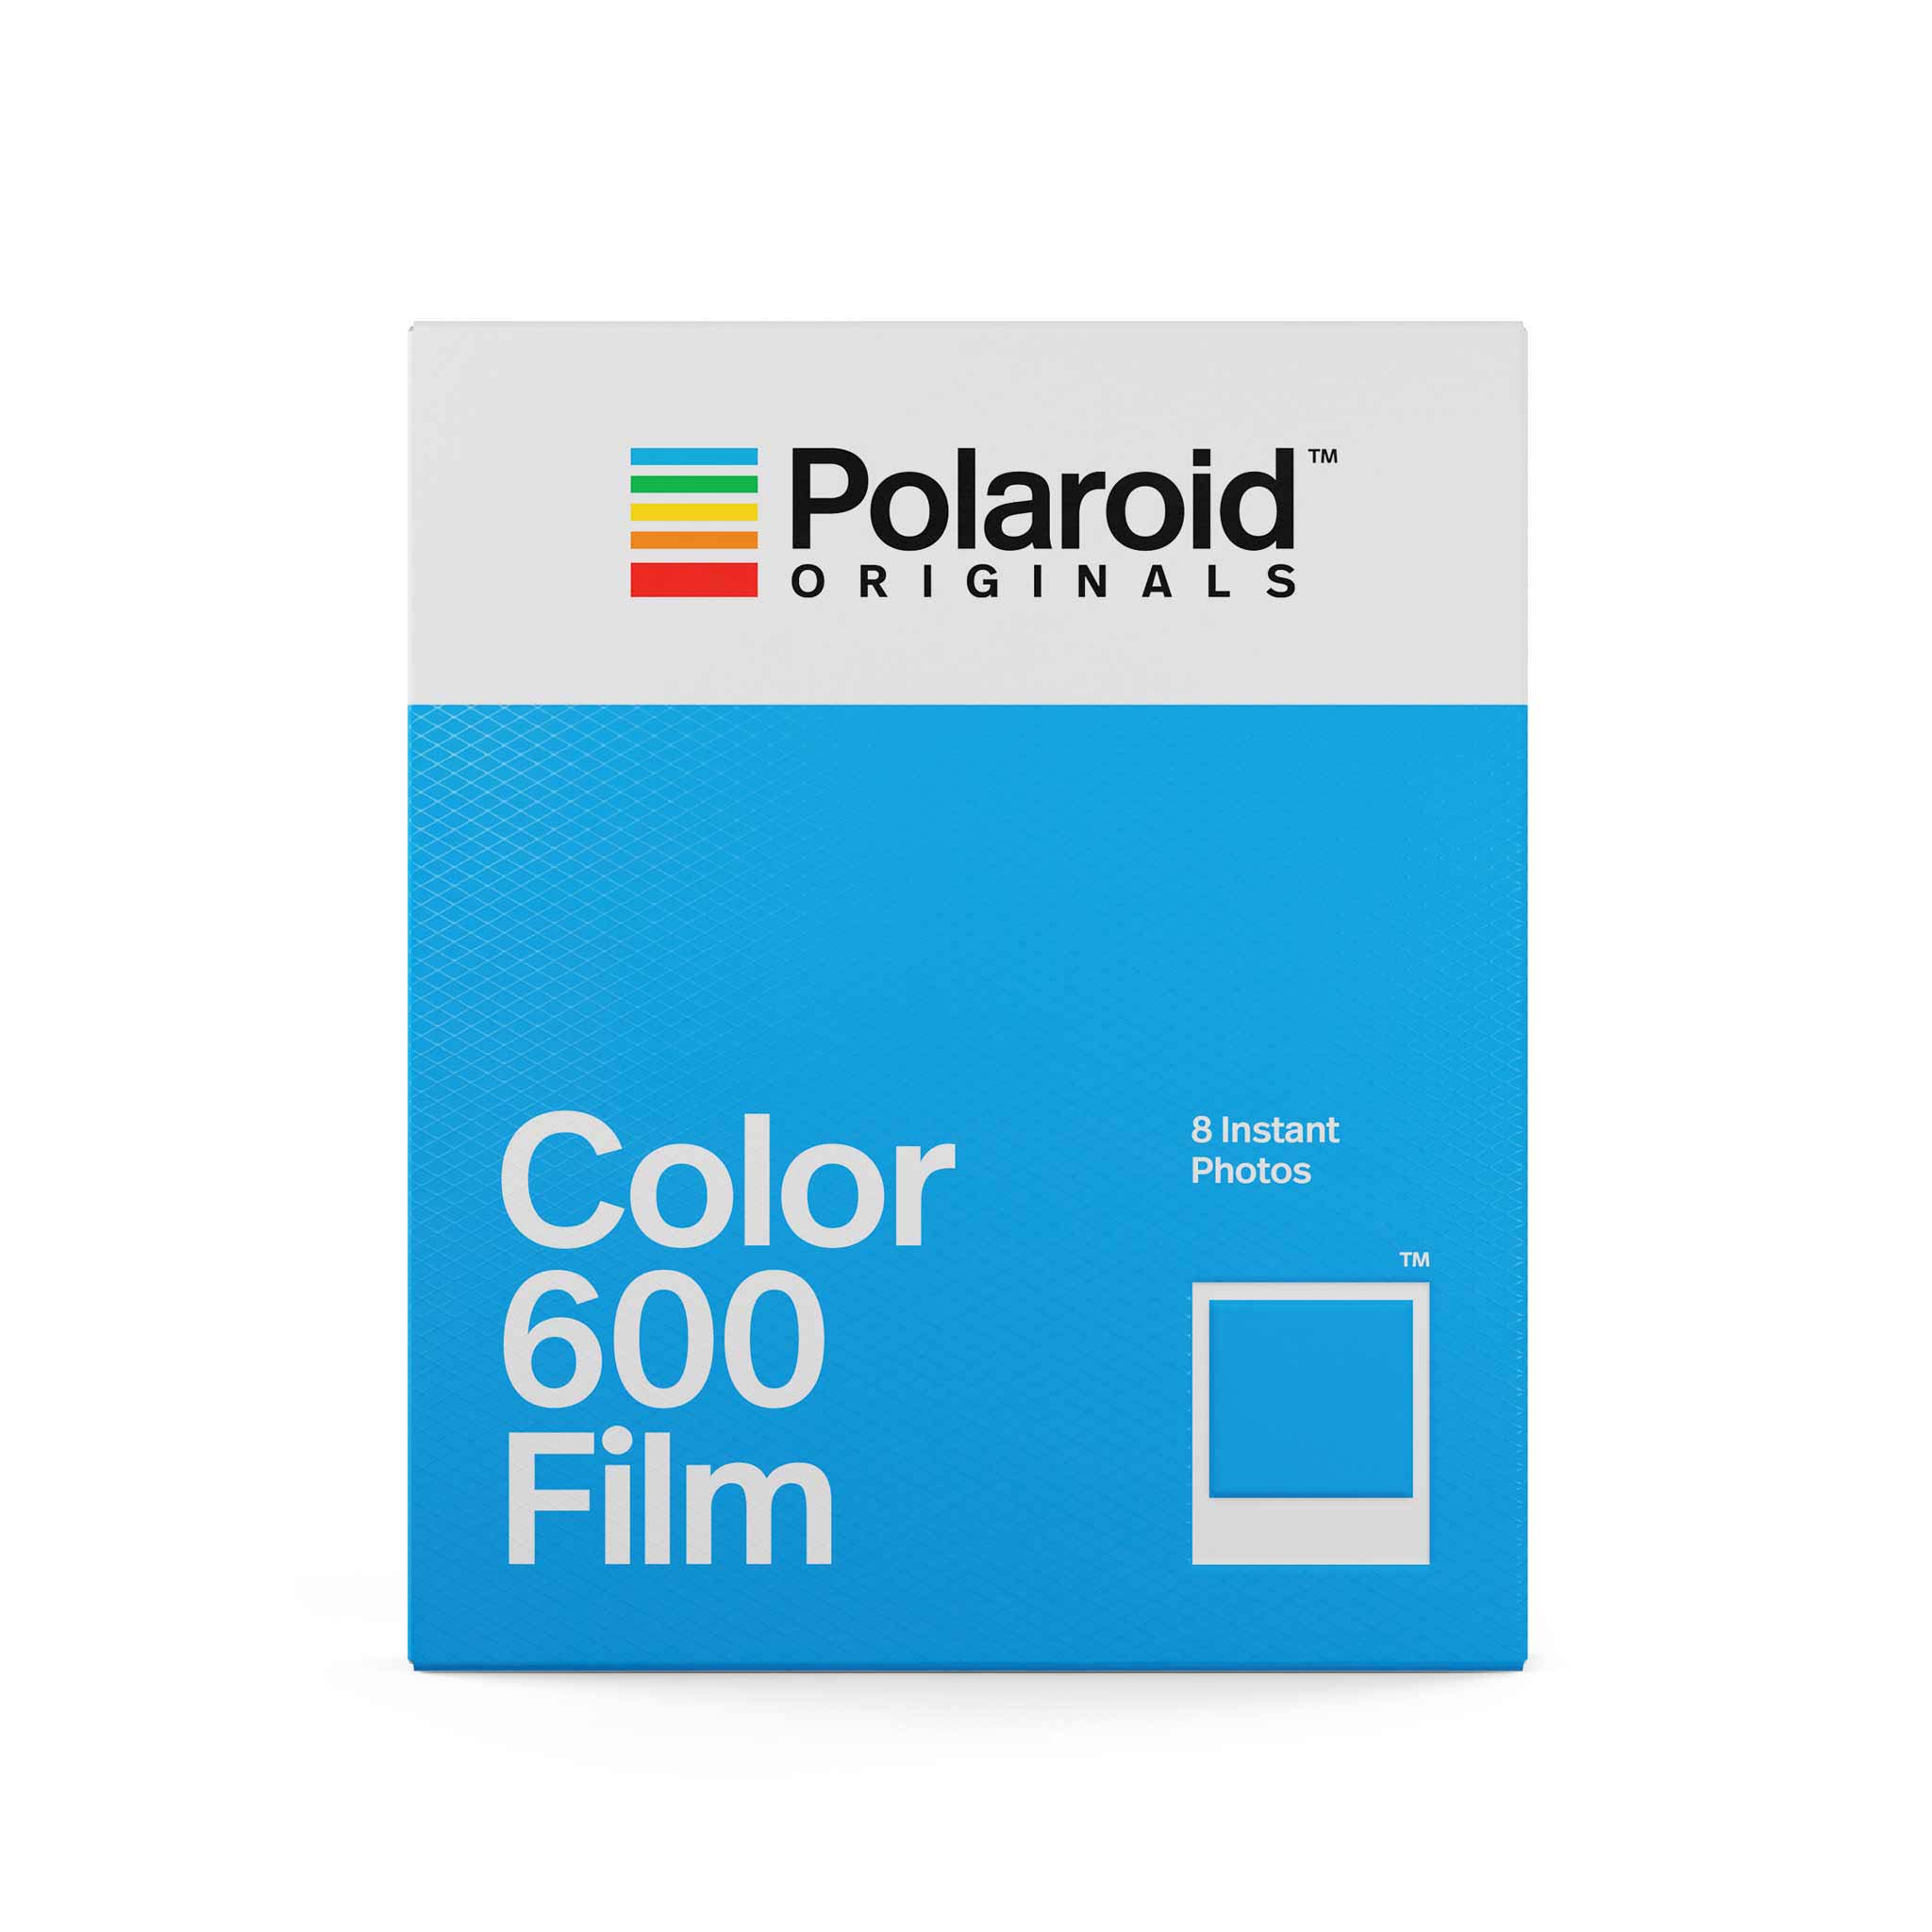 Papier photo instantané Polaroid 8 feuille Color 600 Film